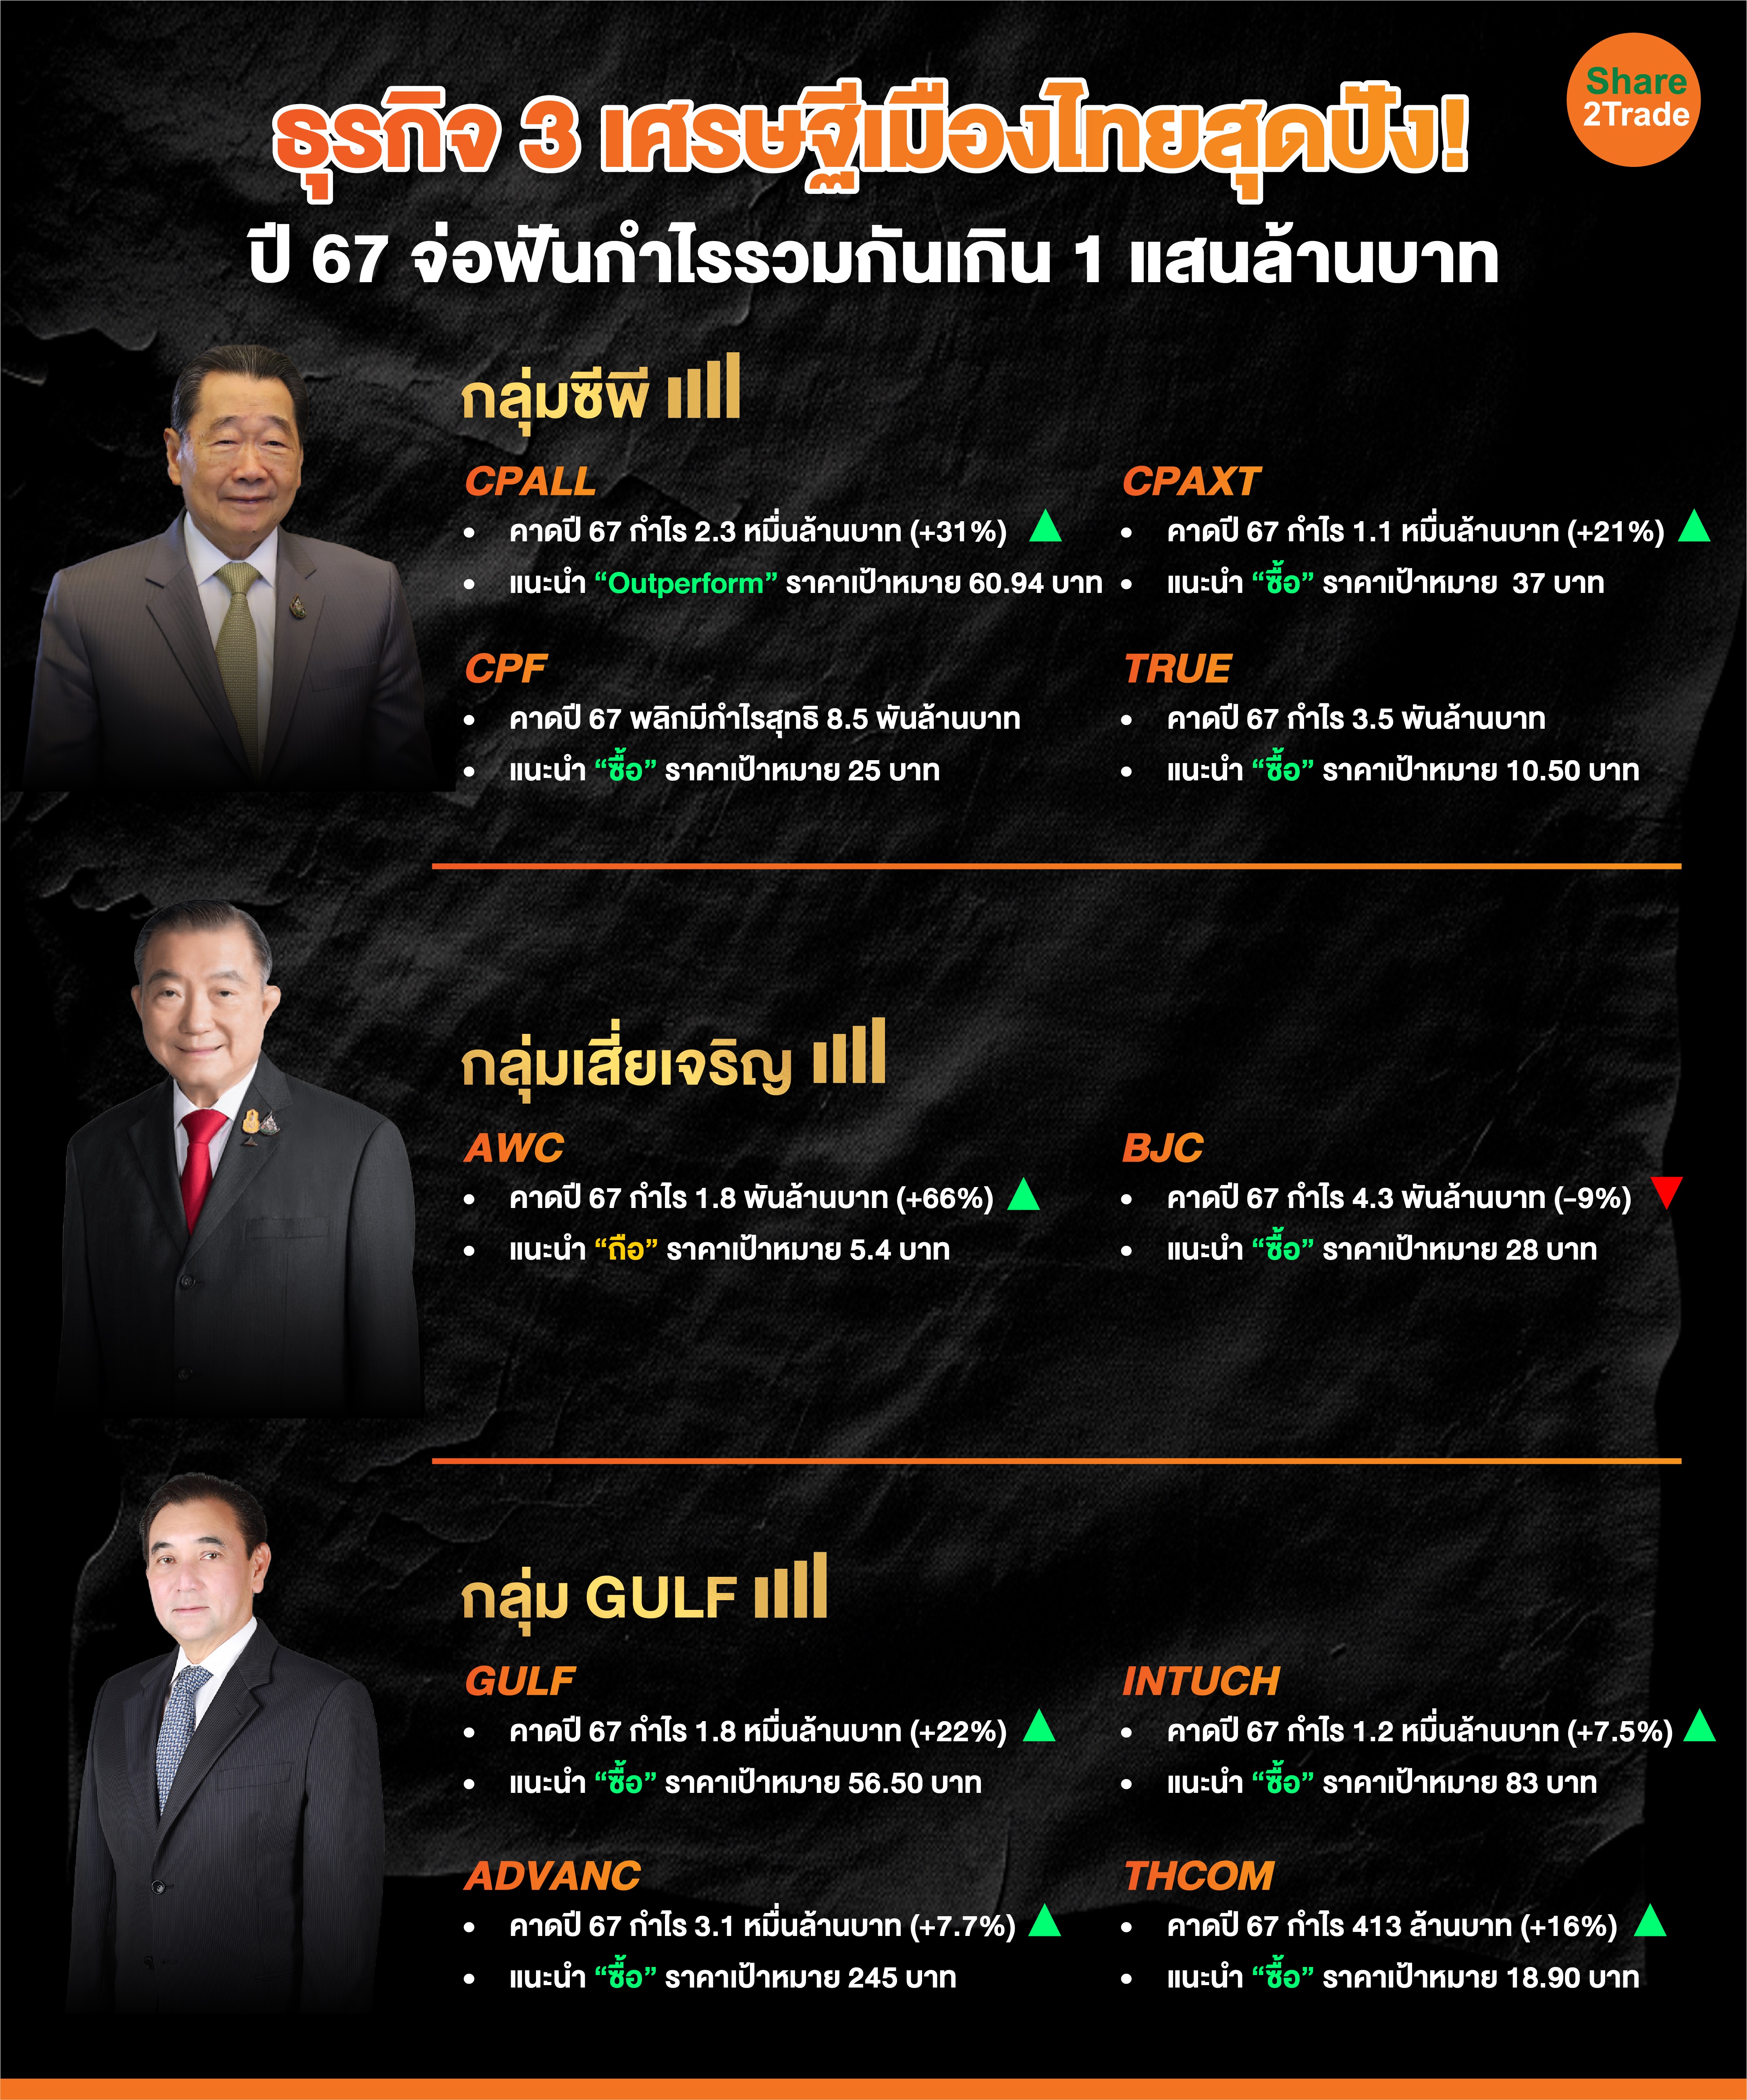 ธุรกิจ 3 เศรษฐีเมืองไทยสุดปัง!-02_0.jpg